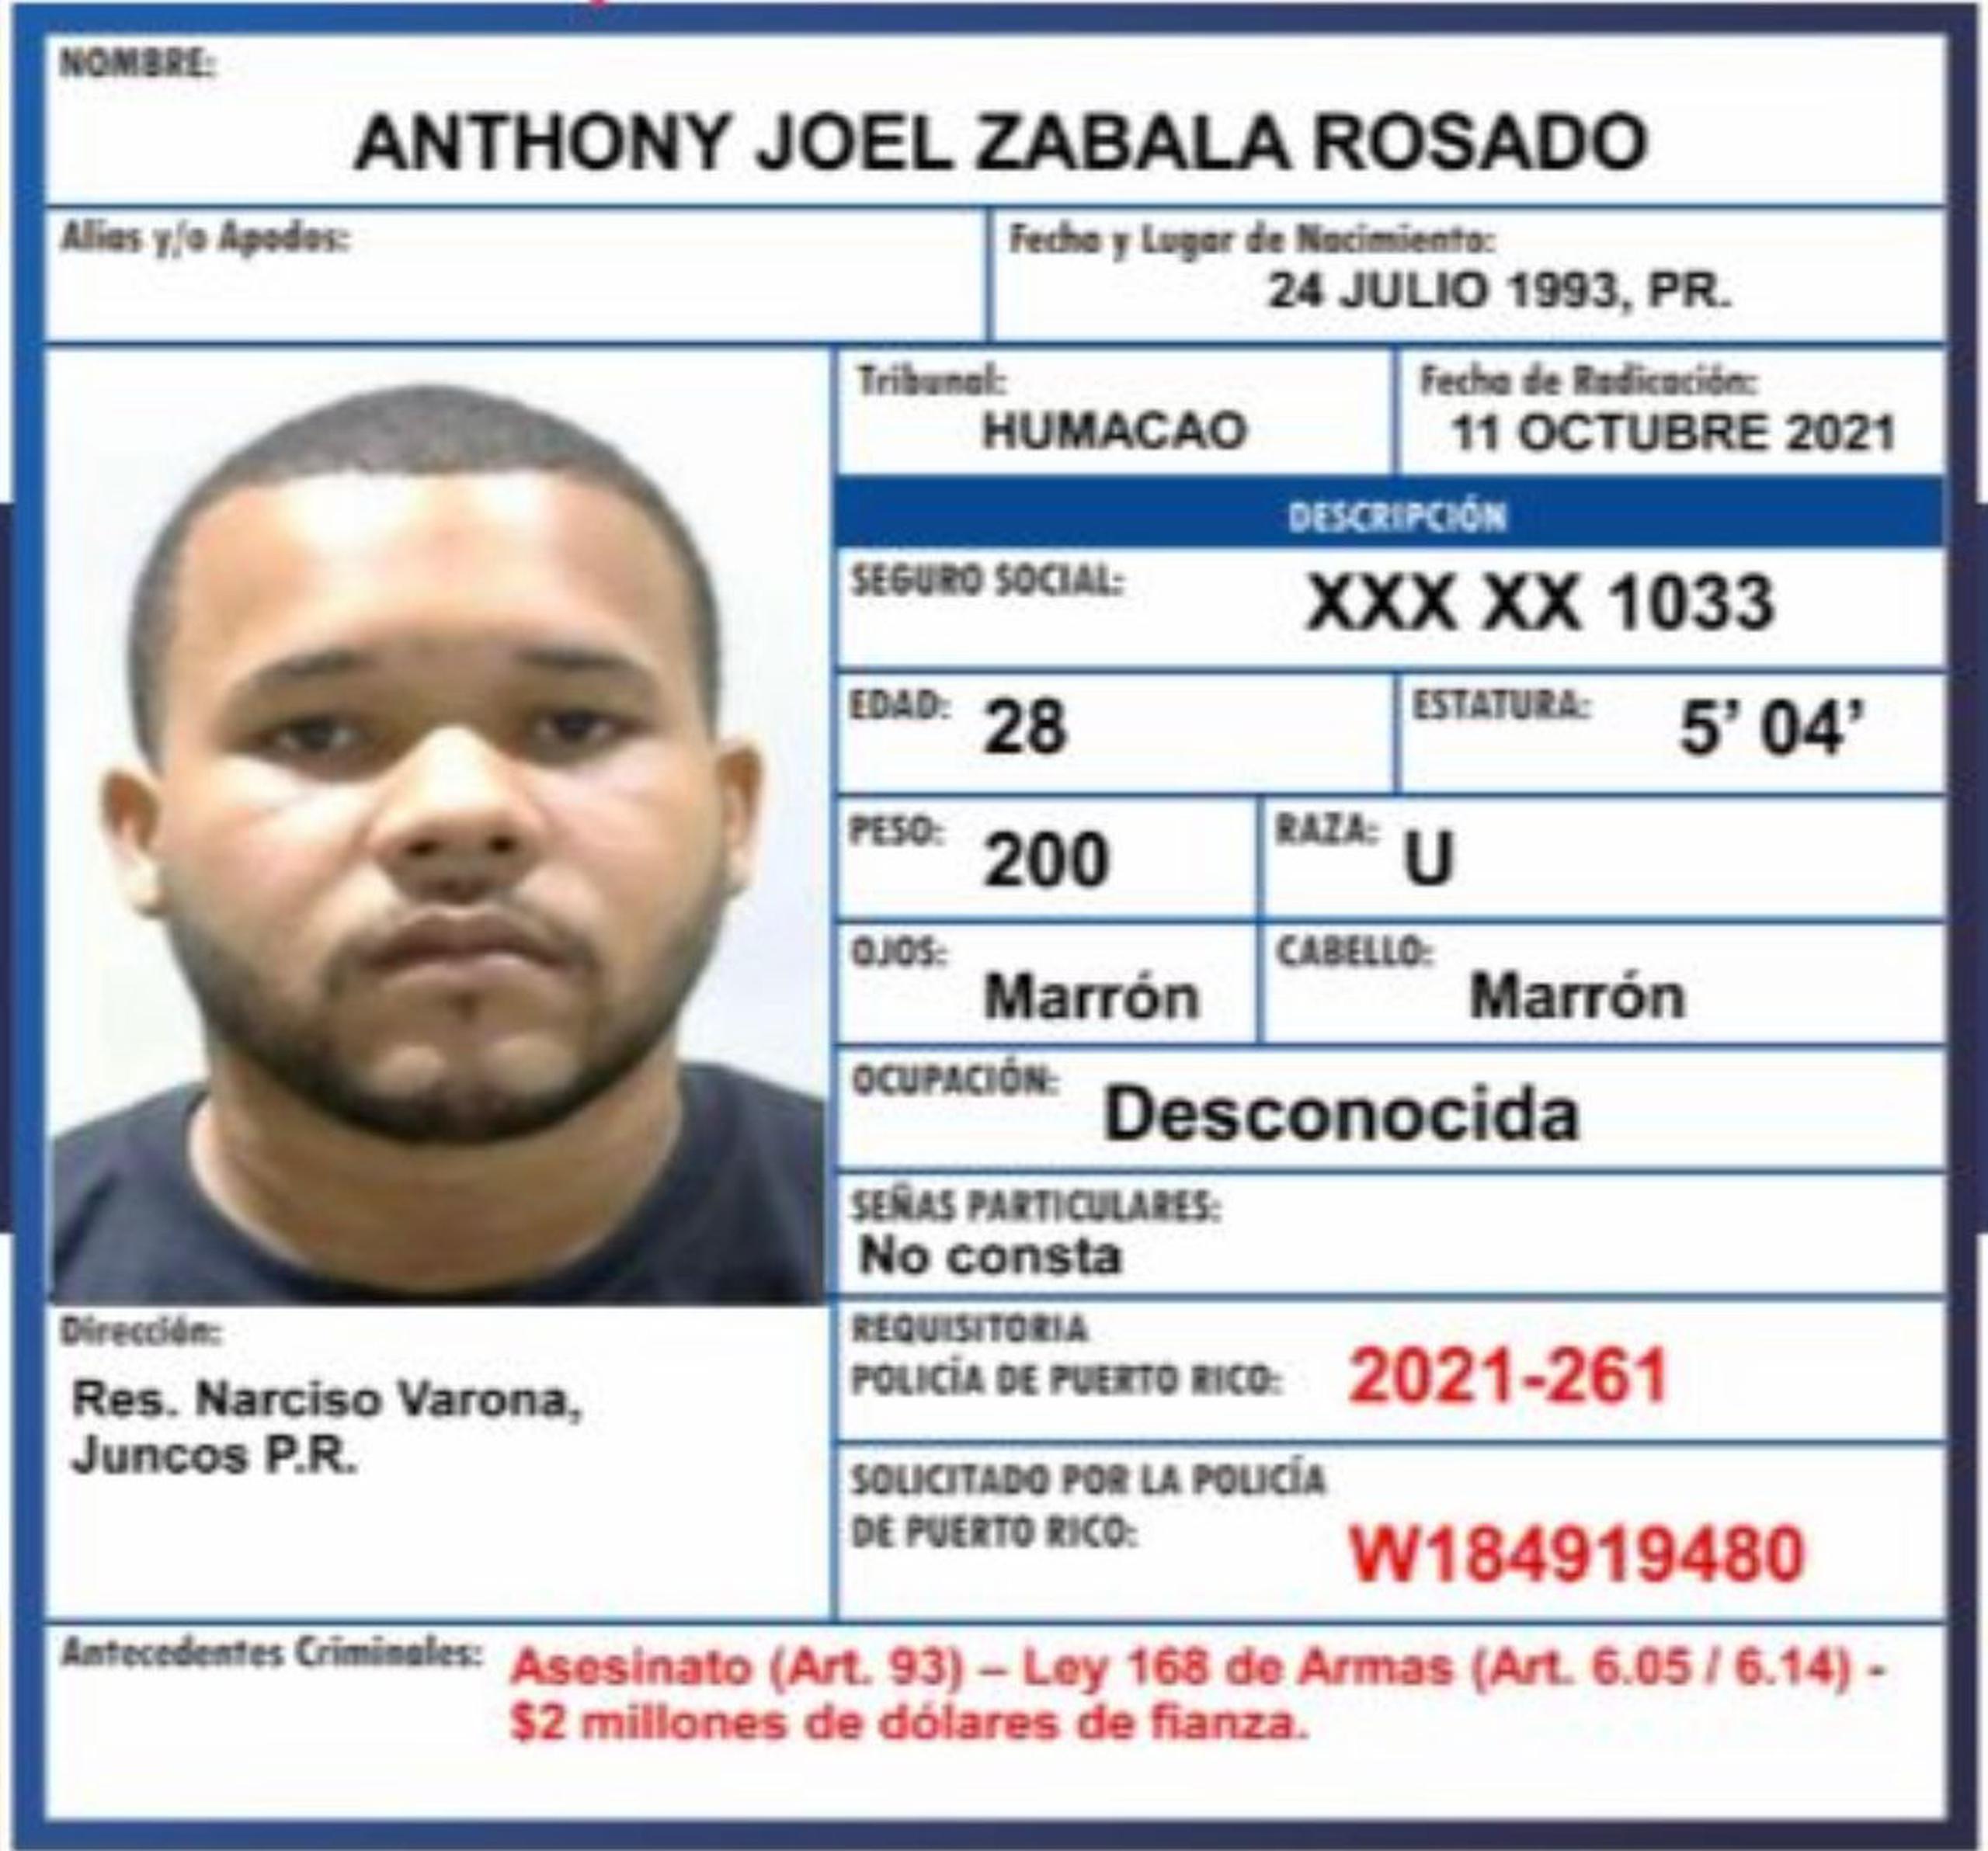 El fugitivo Anthony Joel Zabala Rosado de 29 años, quien figuraba en la lista de Los 12 Más Buscados en la isla, fue capturado en los predios de una farmacia en Vega Alta.